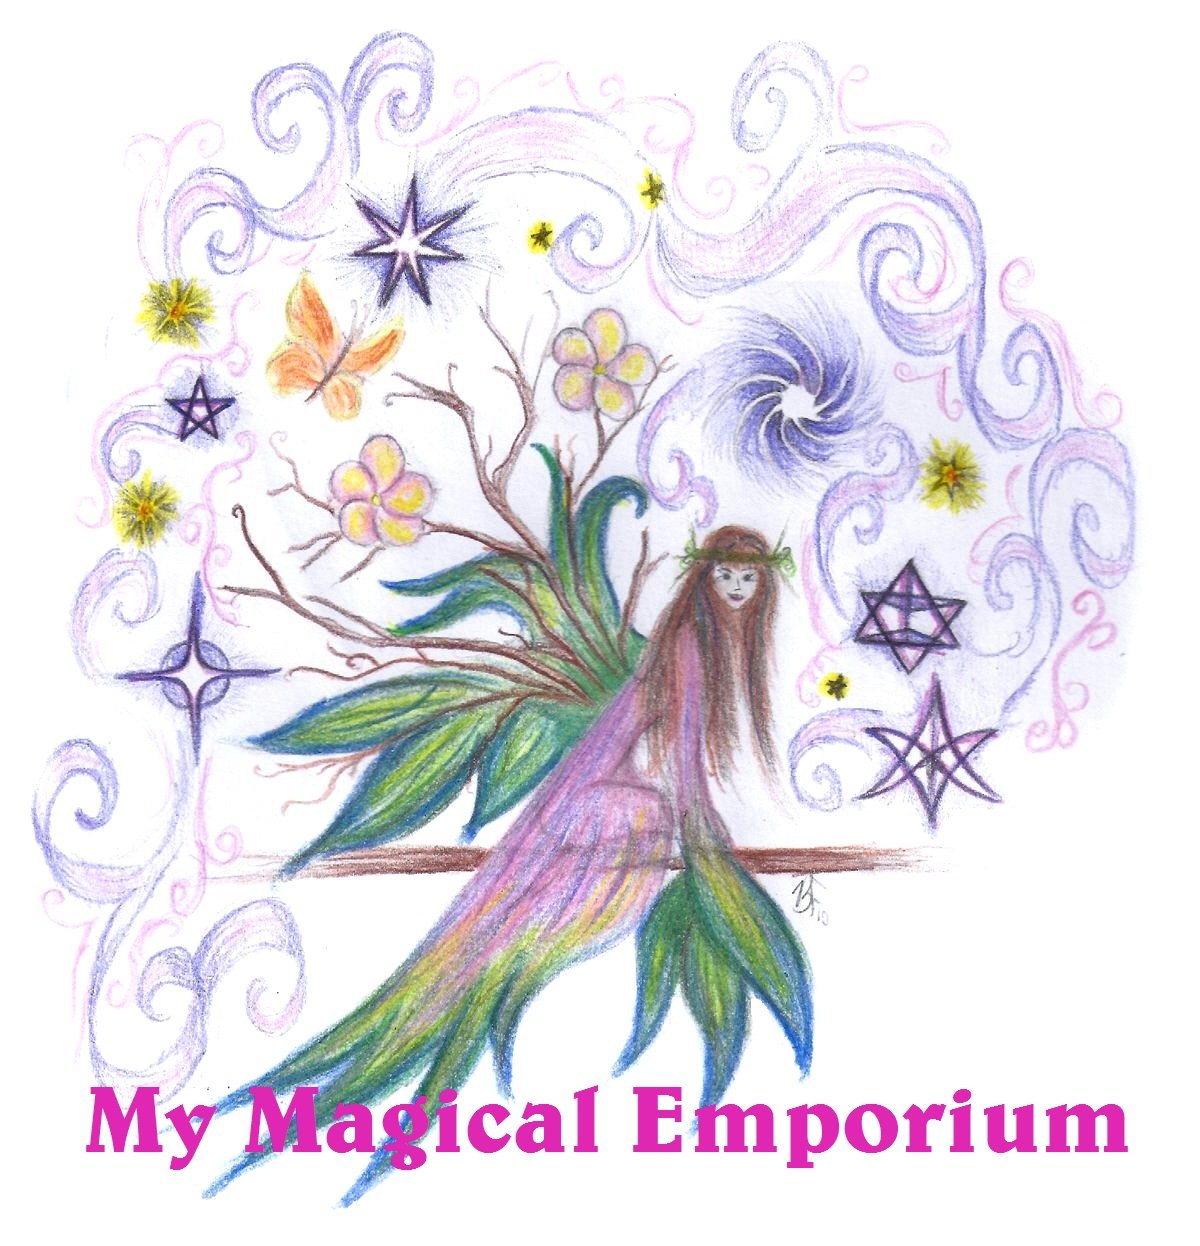 My Magical Emporium